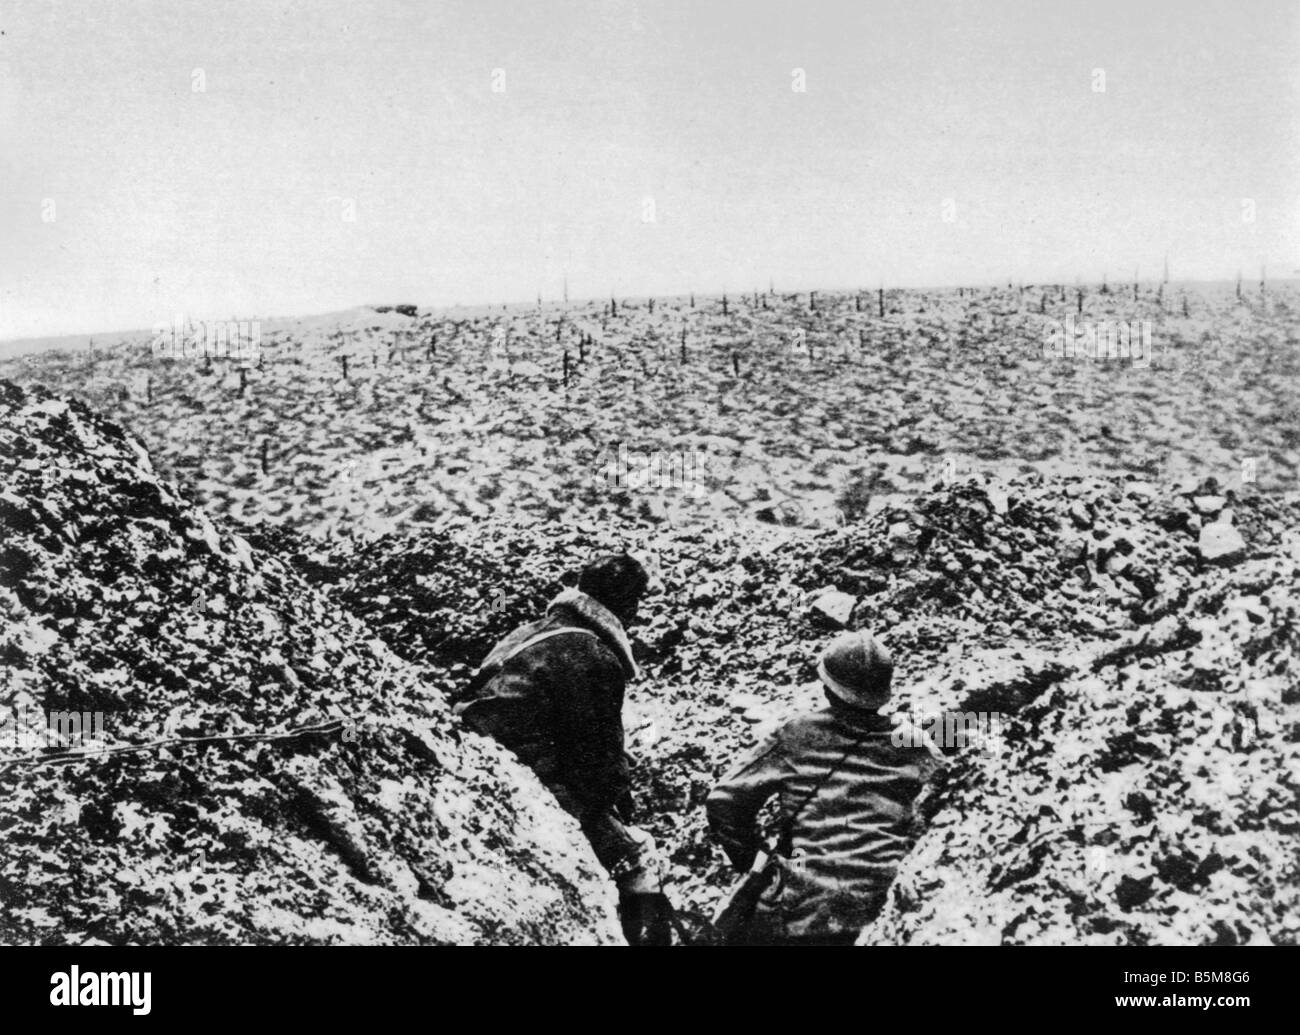 2 G55 F1 1917 3 Verdun 1917 posizione francese a storia Damloup WWI Francia una guerra di trincea vicino a Verdun 1917 Posizione Francese presso Dam Foto Stock